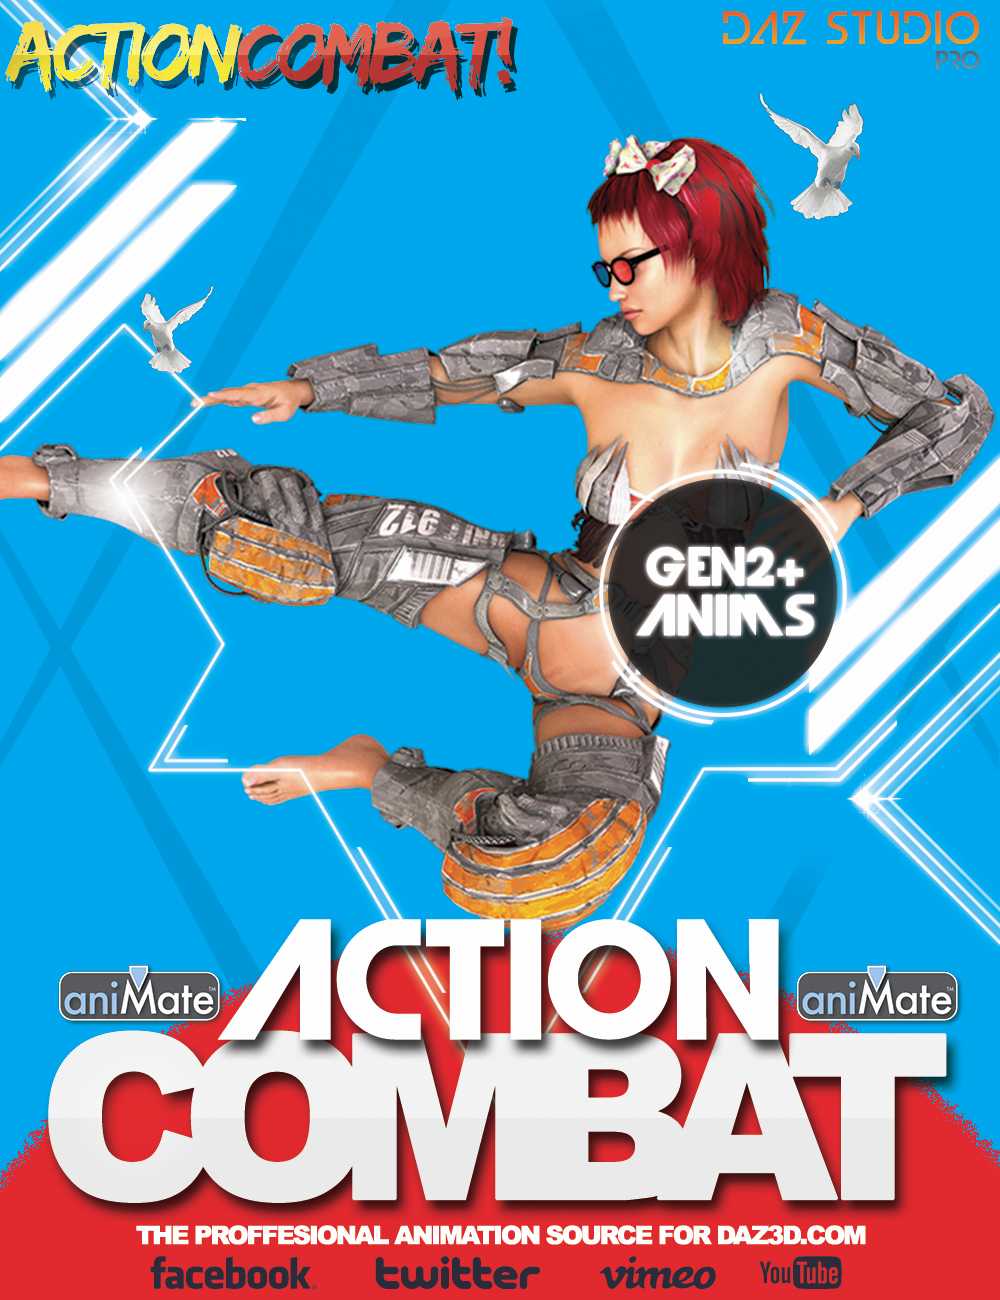 CGI Action Combat Vol.2 by: BoneTech3D, 3D Models by Daz 3D